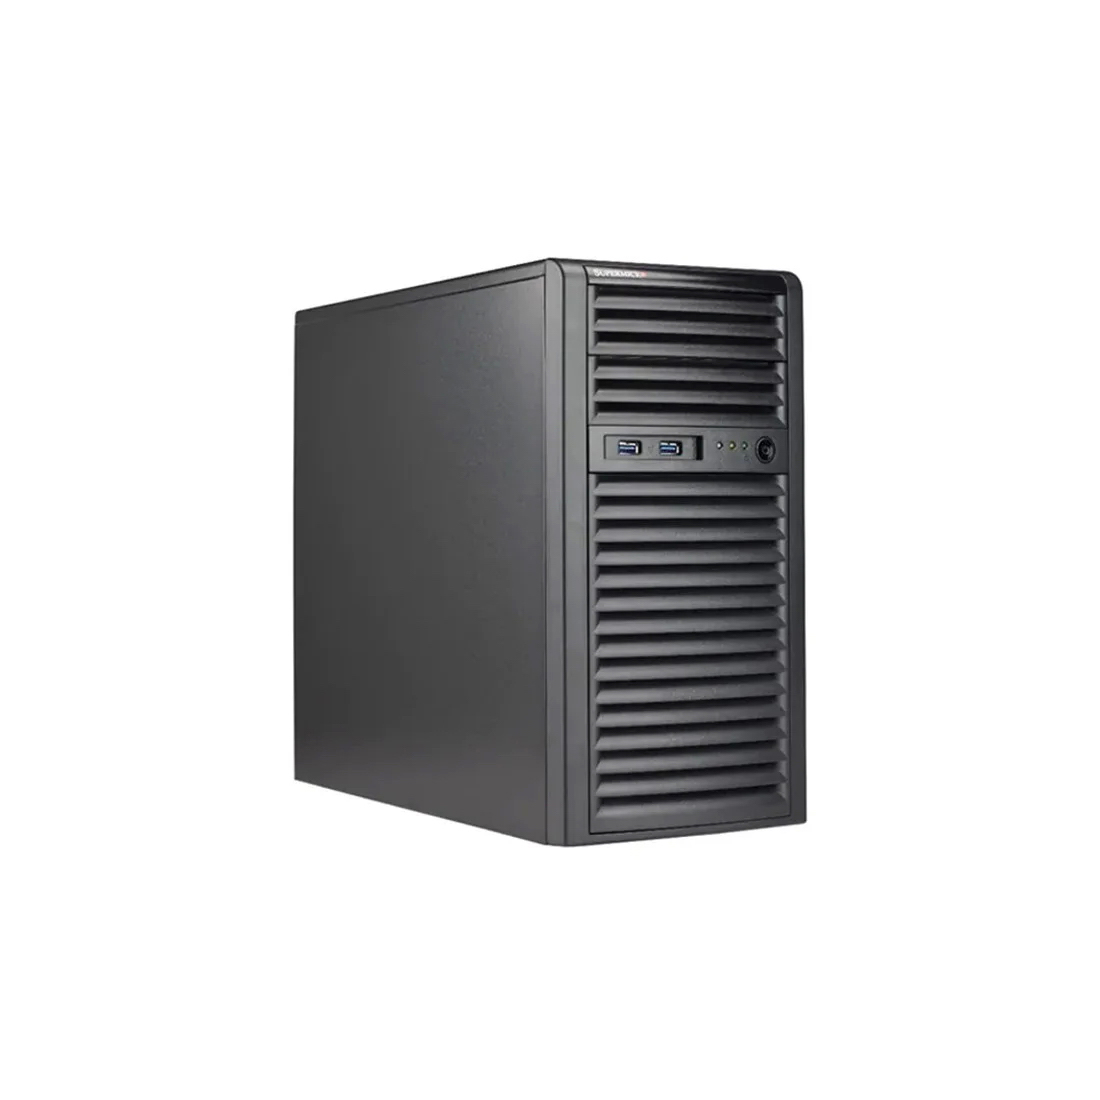 Серверная платформа Supermicro SYS-530T-I (Xeon E-2324) + Windows Server 2022 (16 core)